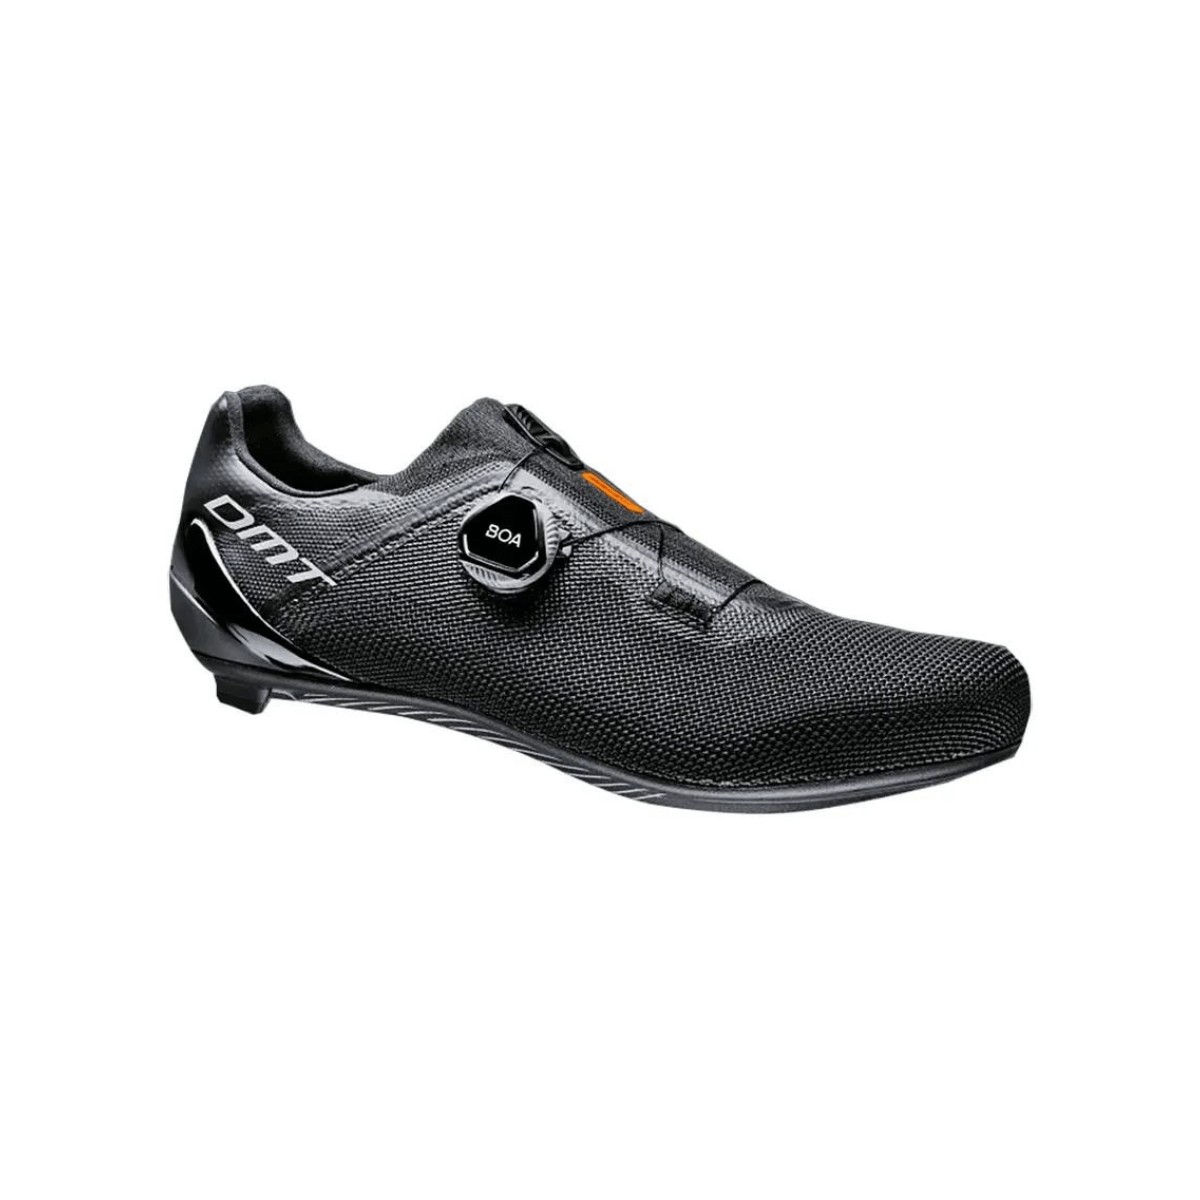 DMT KR4 Shoes Black, Size 43 - EUR